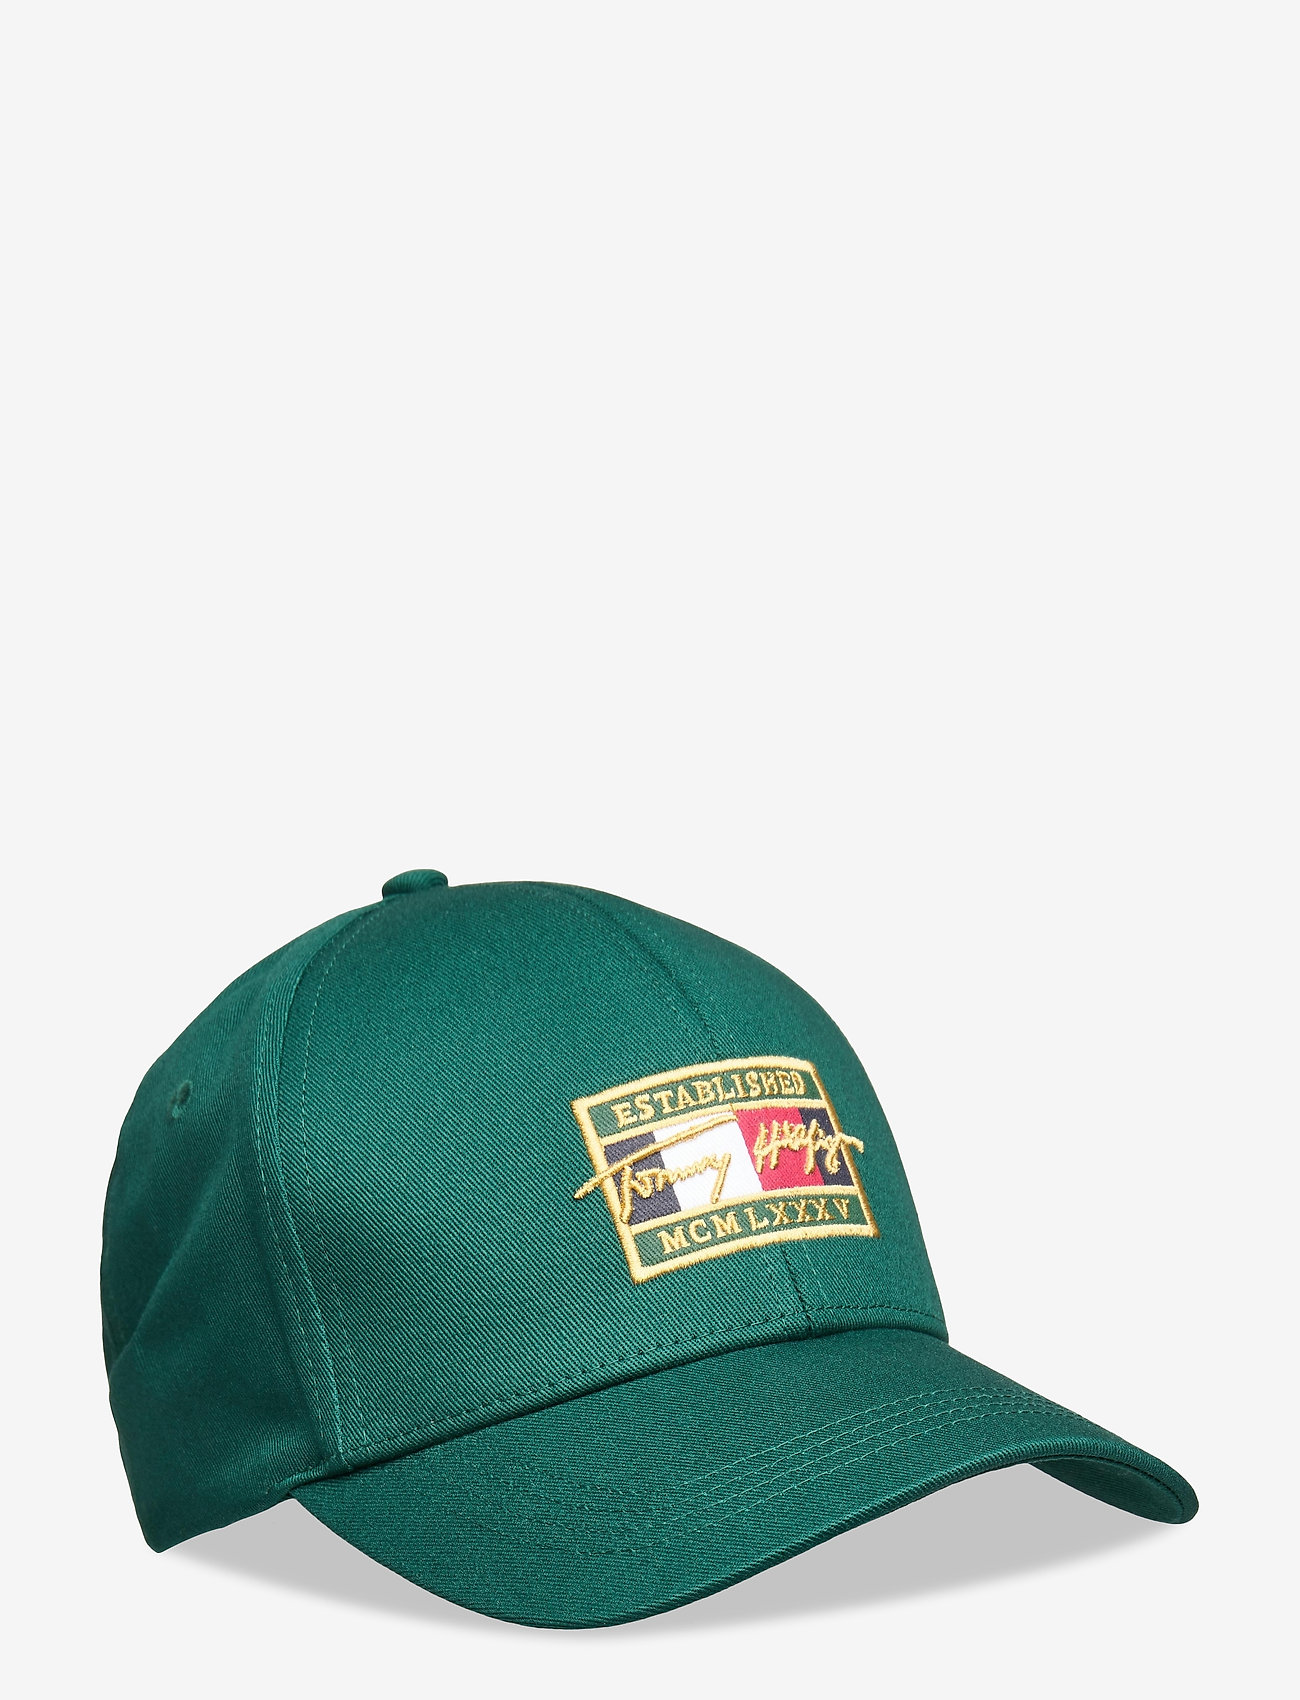 tommy hilfiger green cap